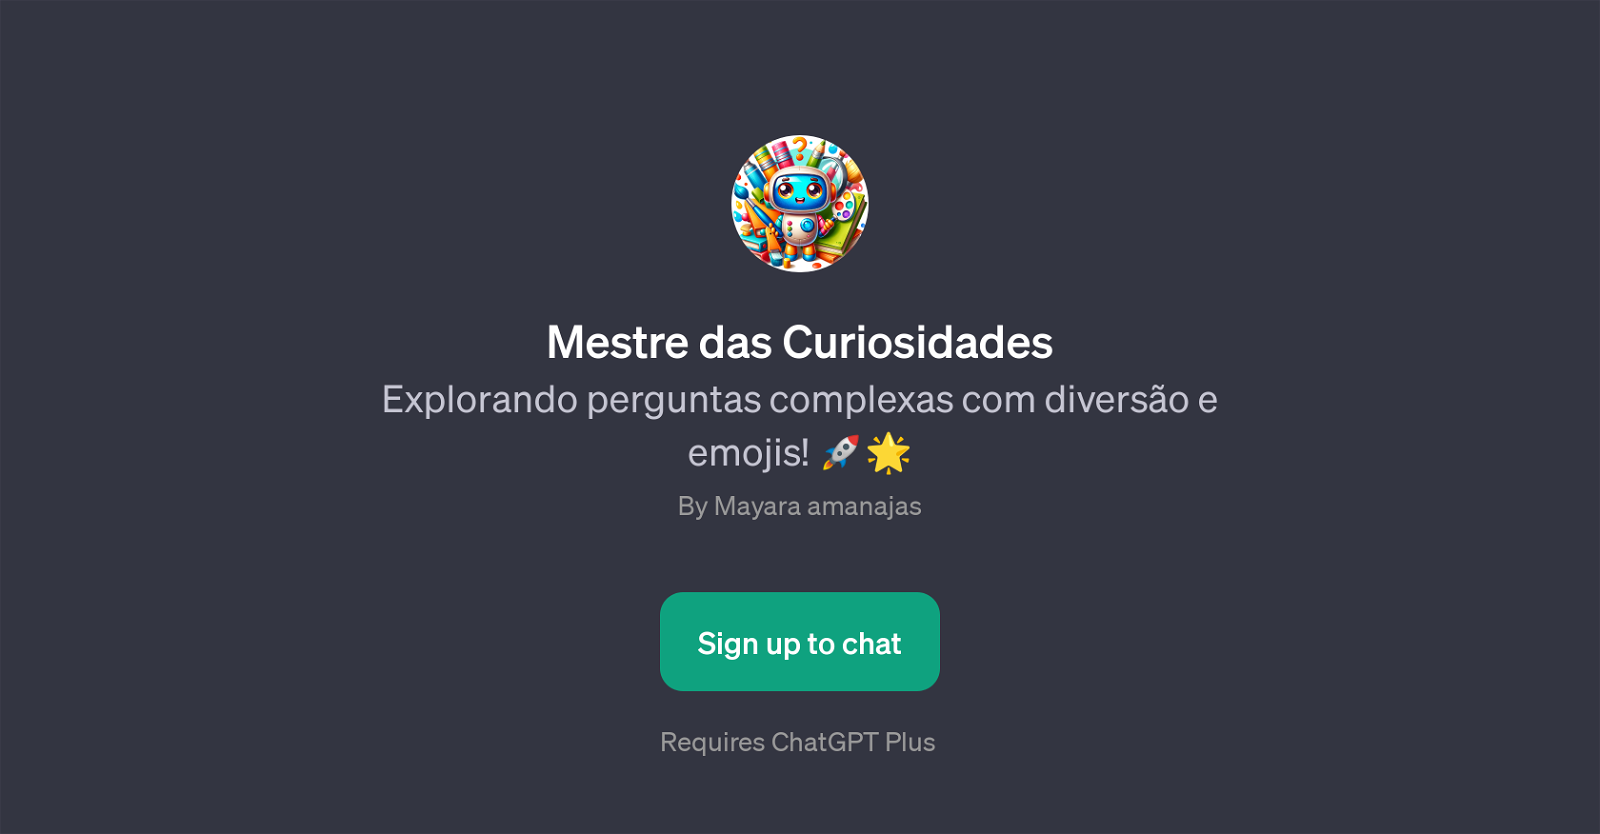 Mestre das Curiosidades website